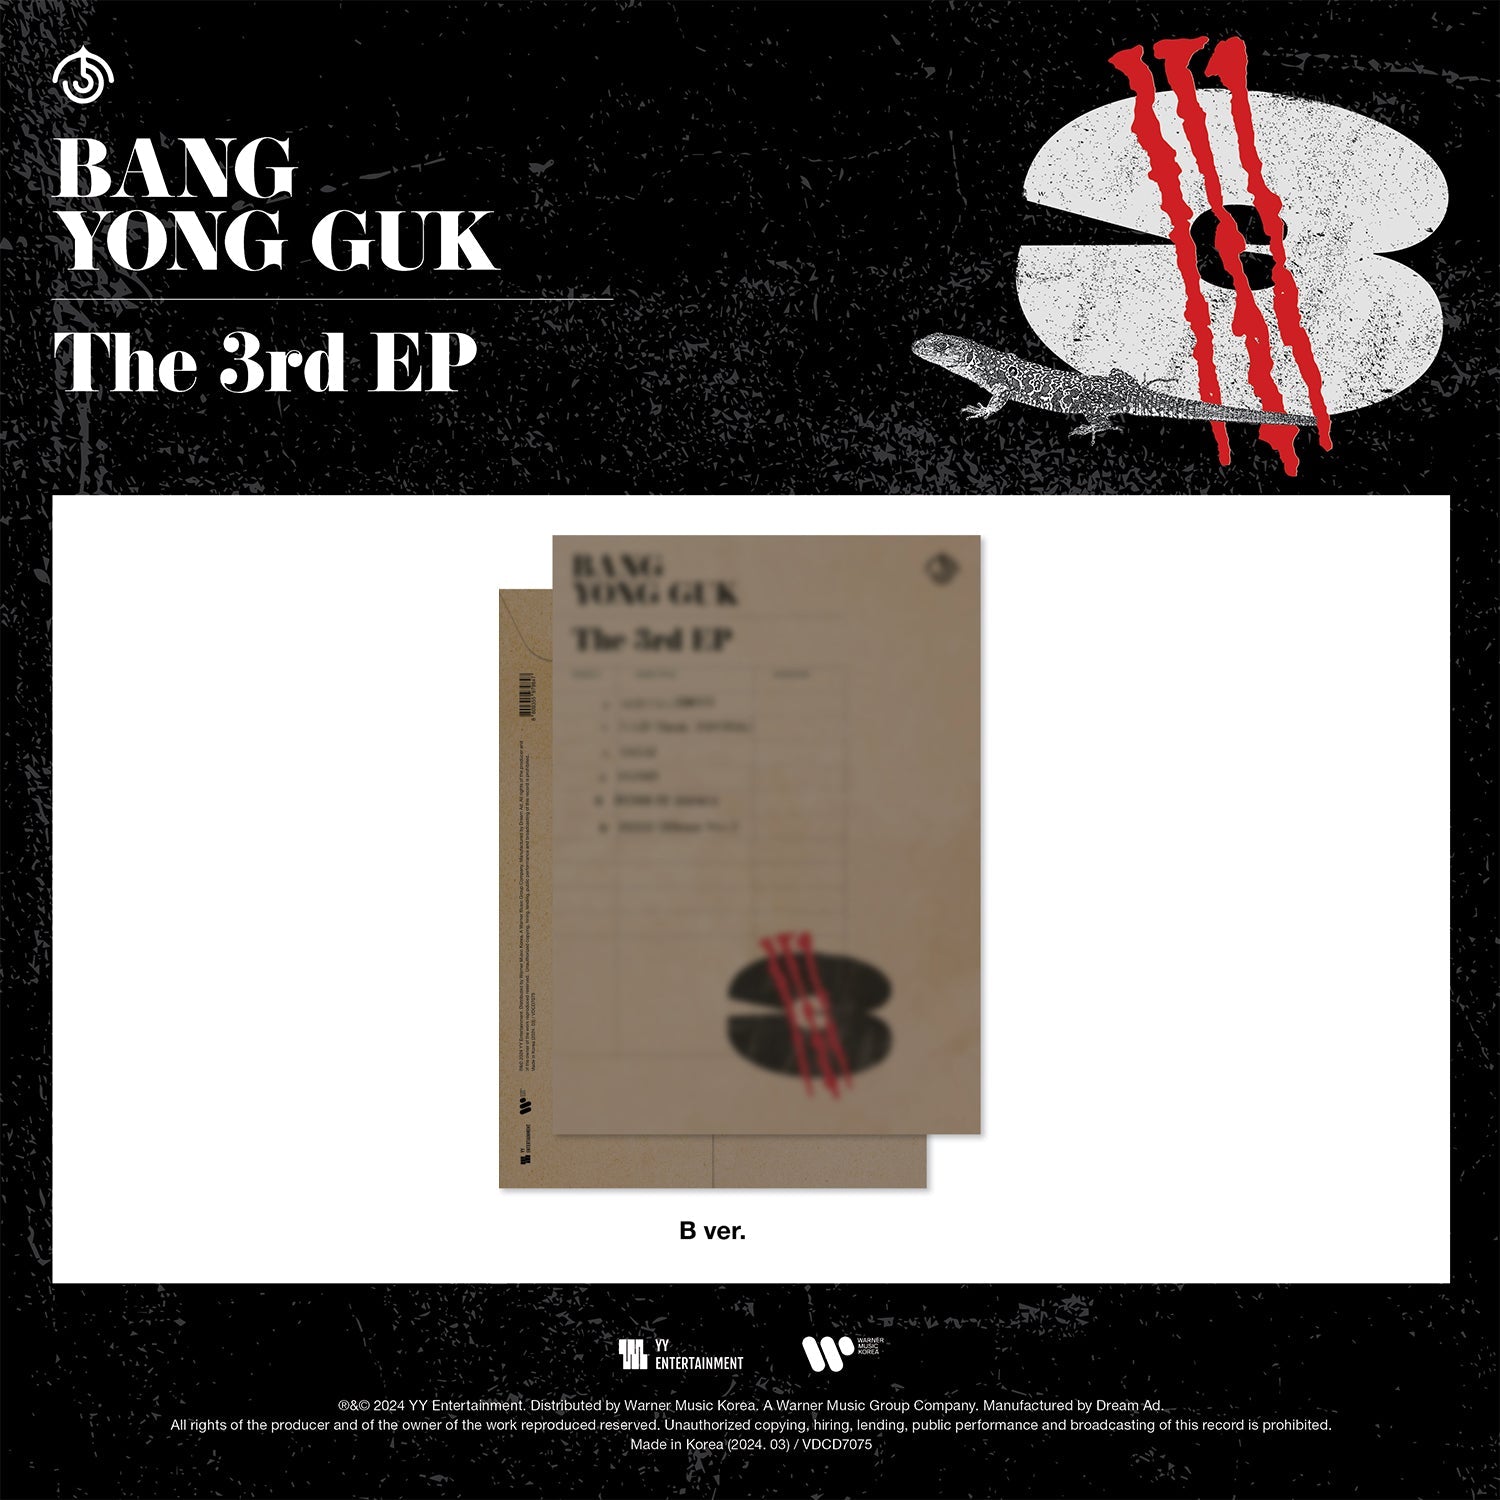 BANG YONGGUK 3RD EP ALBUM '3' B VERSION COVER